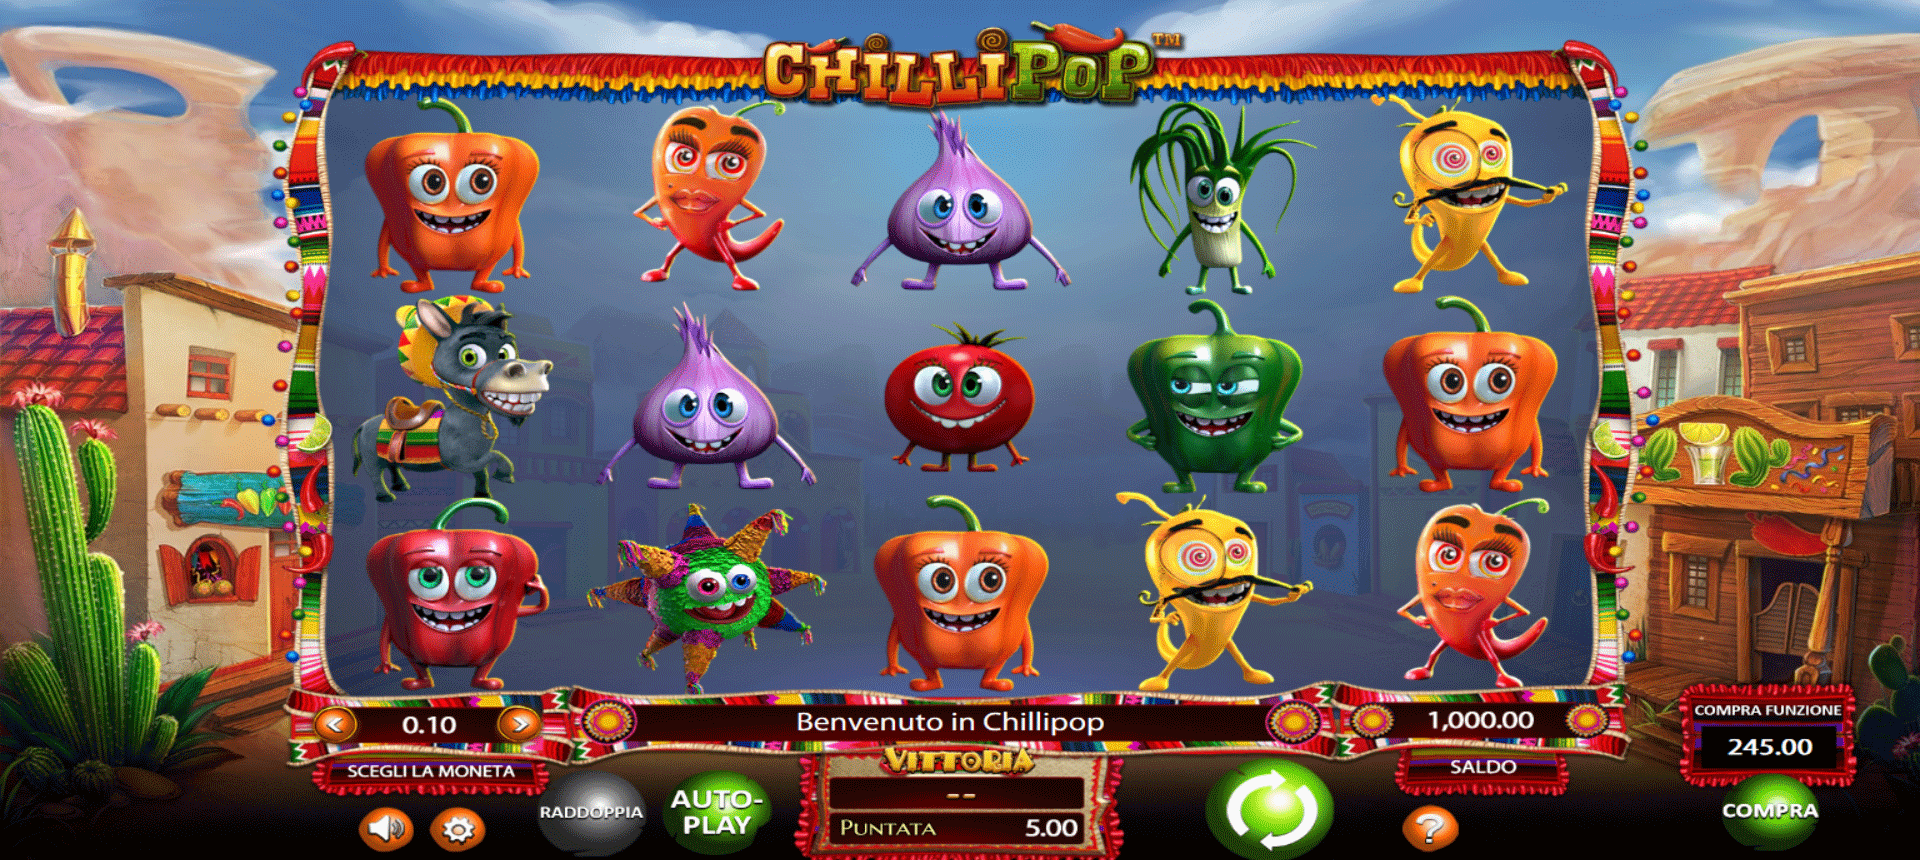 schermata principale della slot machine chilli pop